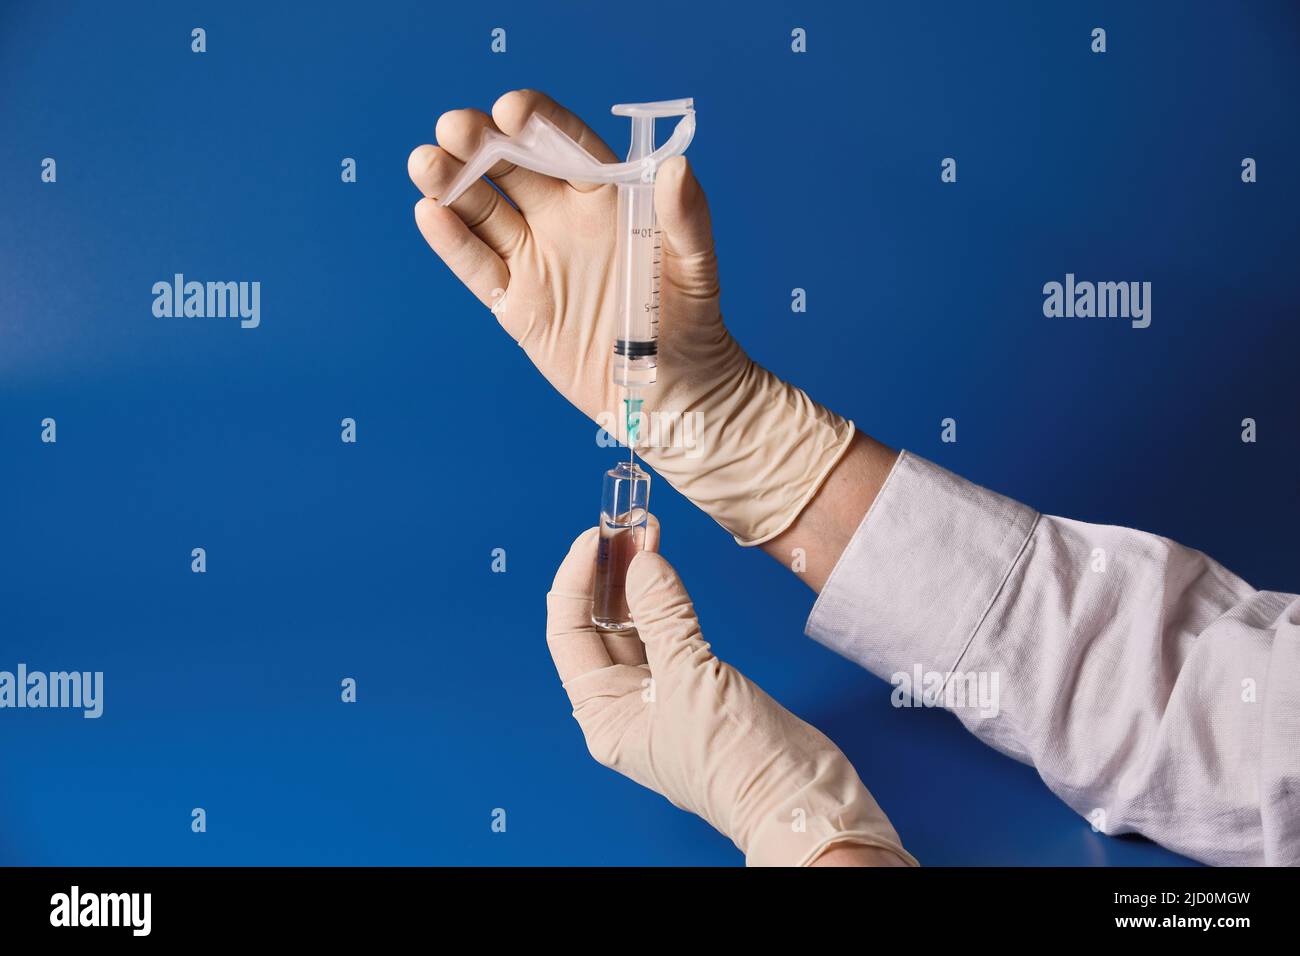 Gloved hand holding syringe on blue background  Stock Photo